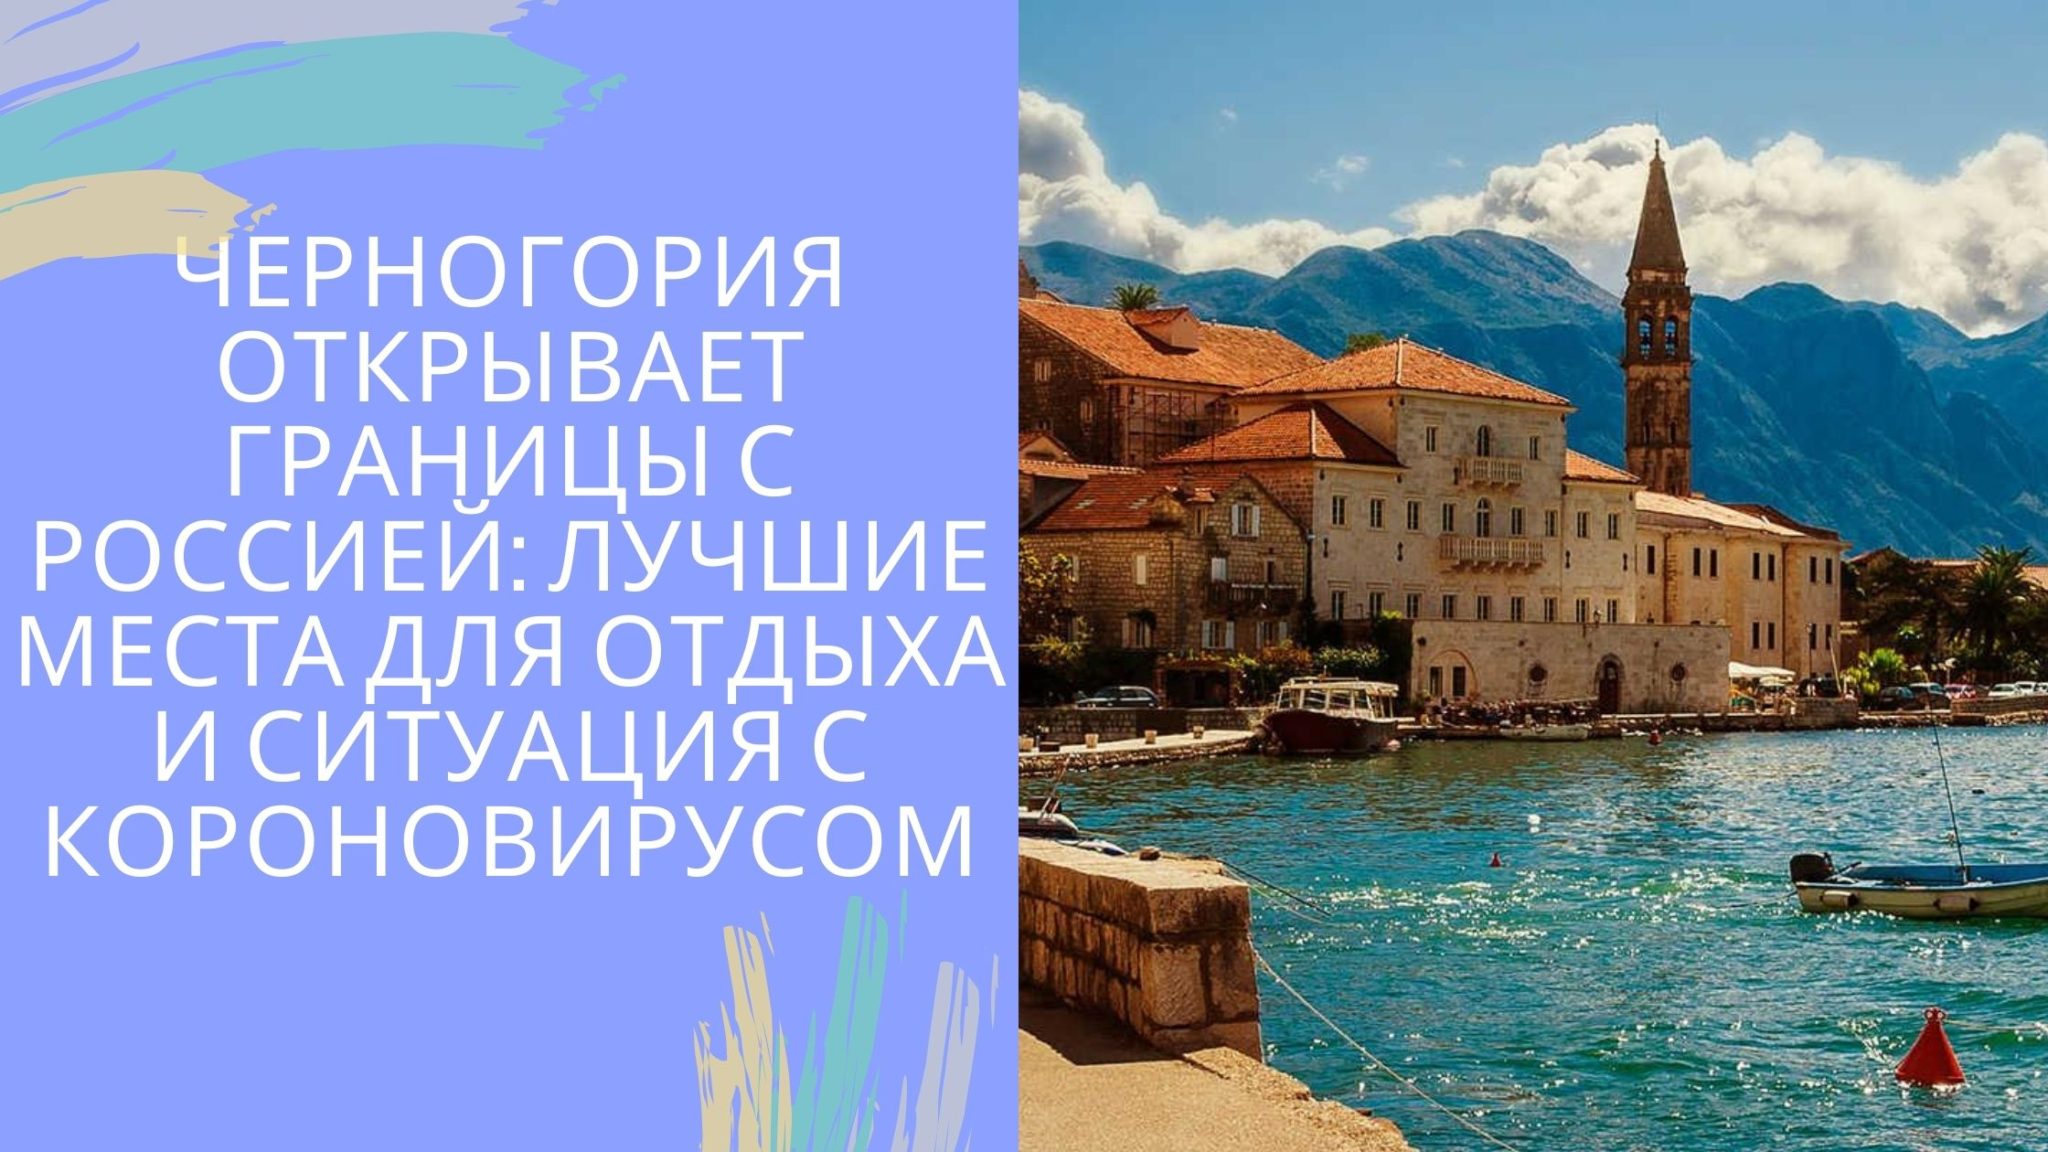 О языке в черногории: история, популярные фразы и слова